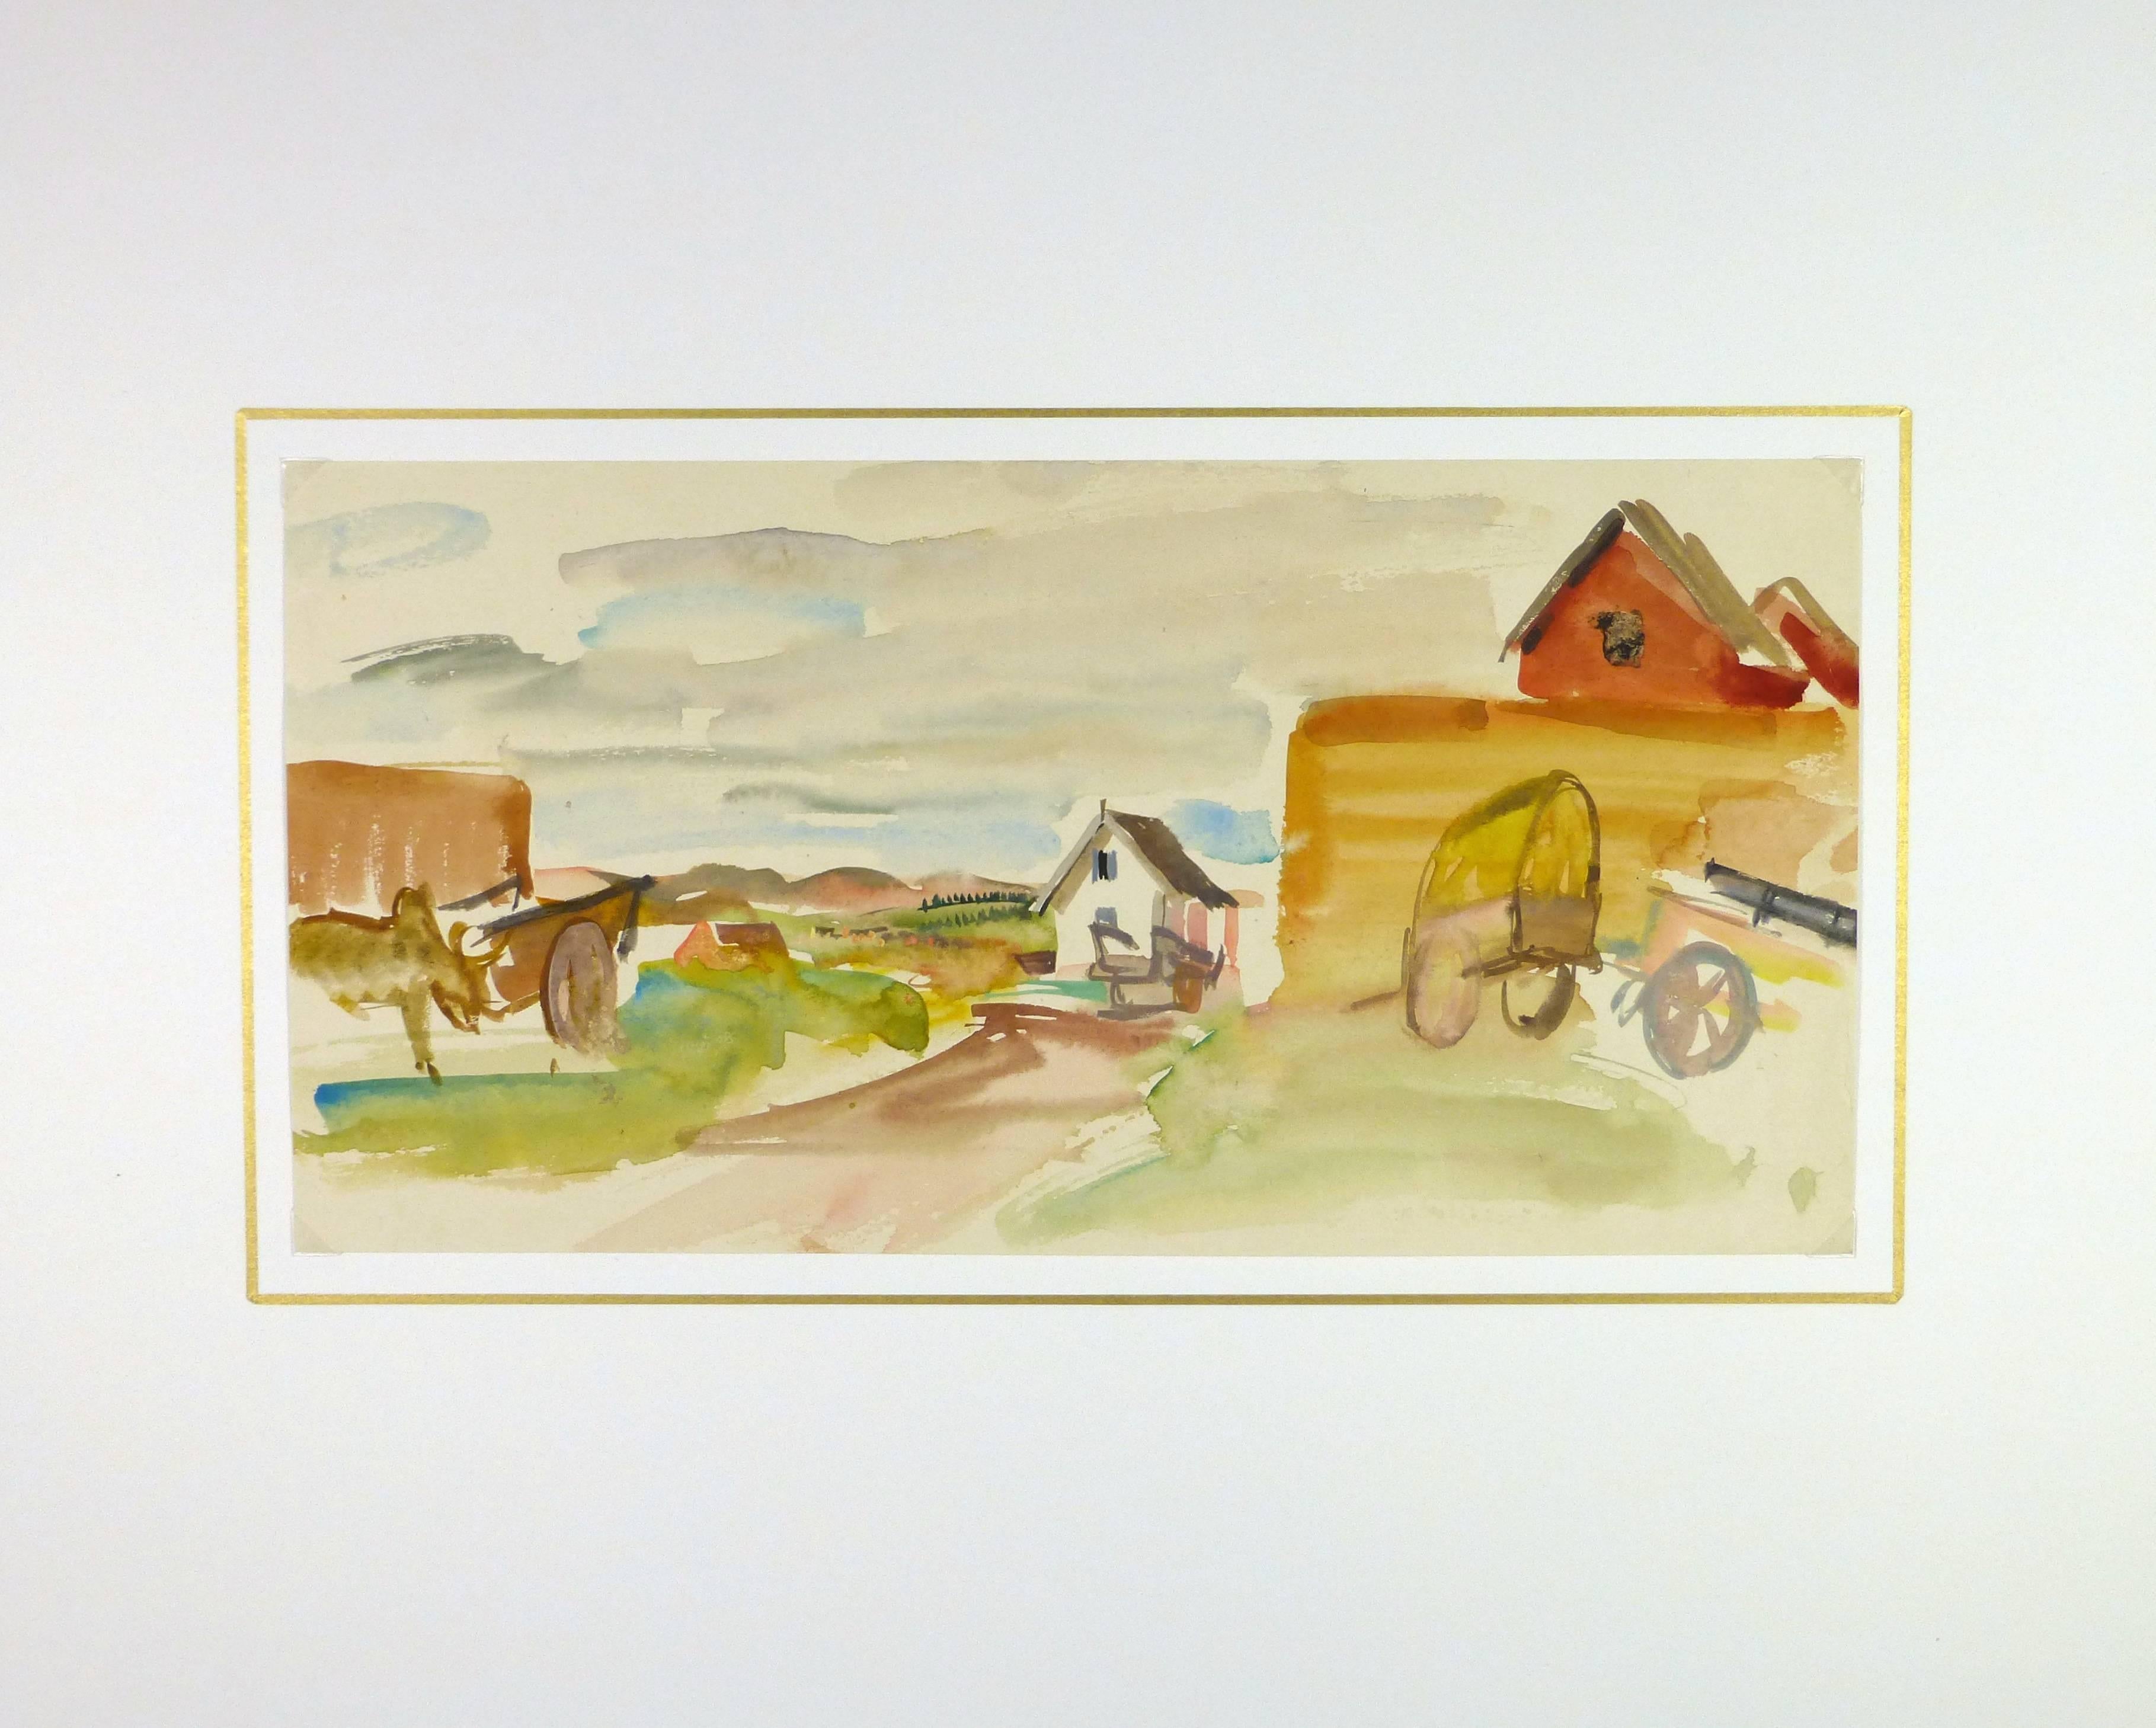 Scène de ferme malgache aquarellée par l'artiste français Stéphane Magnard, vers 1950. 

Œuvre originale sur papier présentée sur un tapis blanc avec une bordure dorée. Pochette d'archivage en plastique et certificat d'authenticité inclus. Œuvre